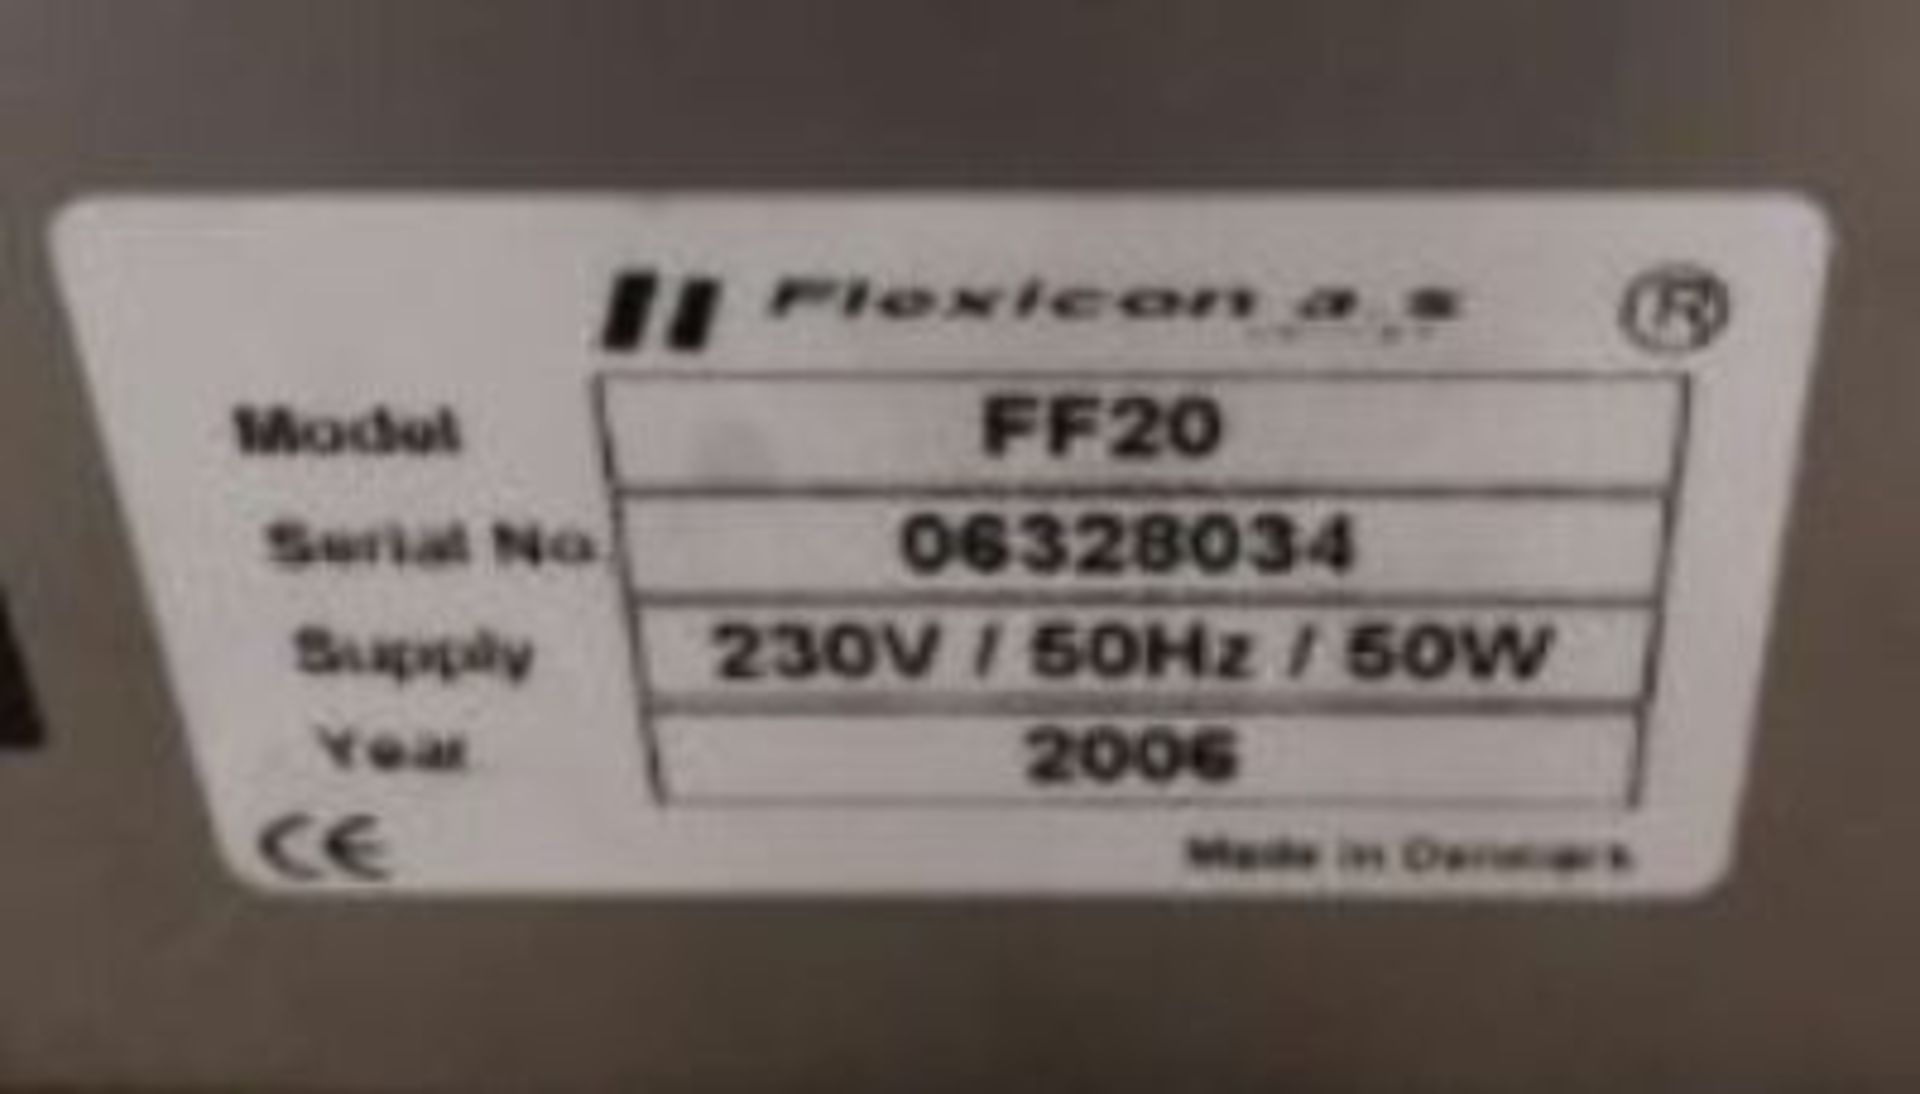 Flexicon Model:FF20 Flexfeed 20 - *S/N 06328034* - Supply 230 V/60HZ/60W - Year 2006 - Image 4 of 4